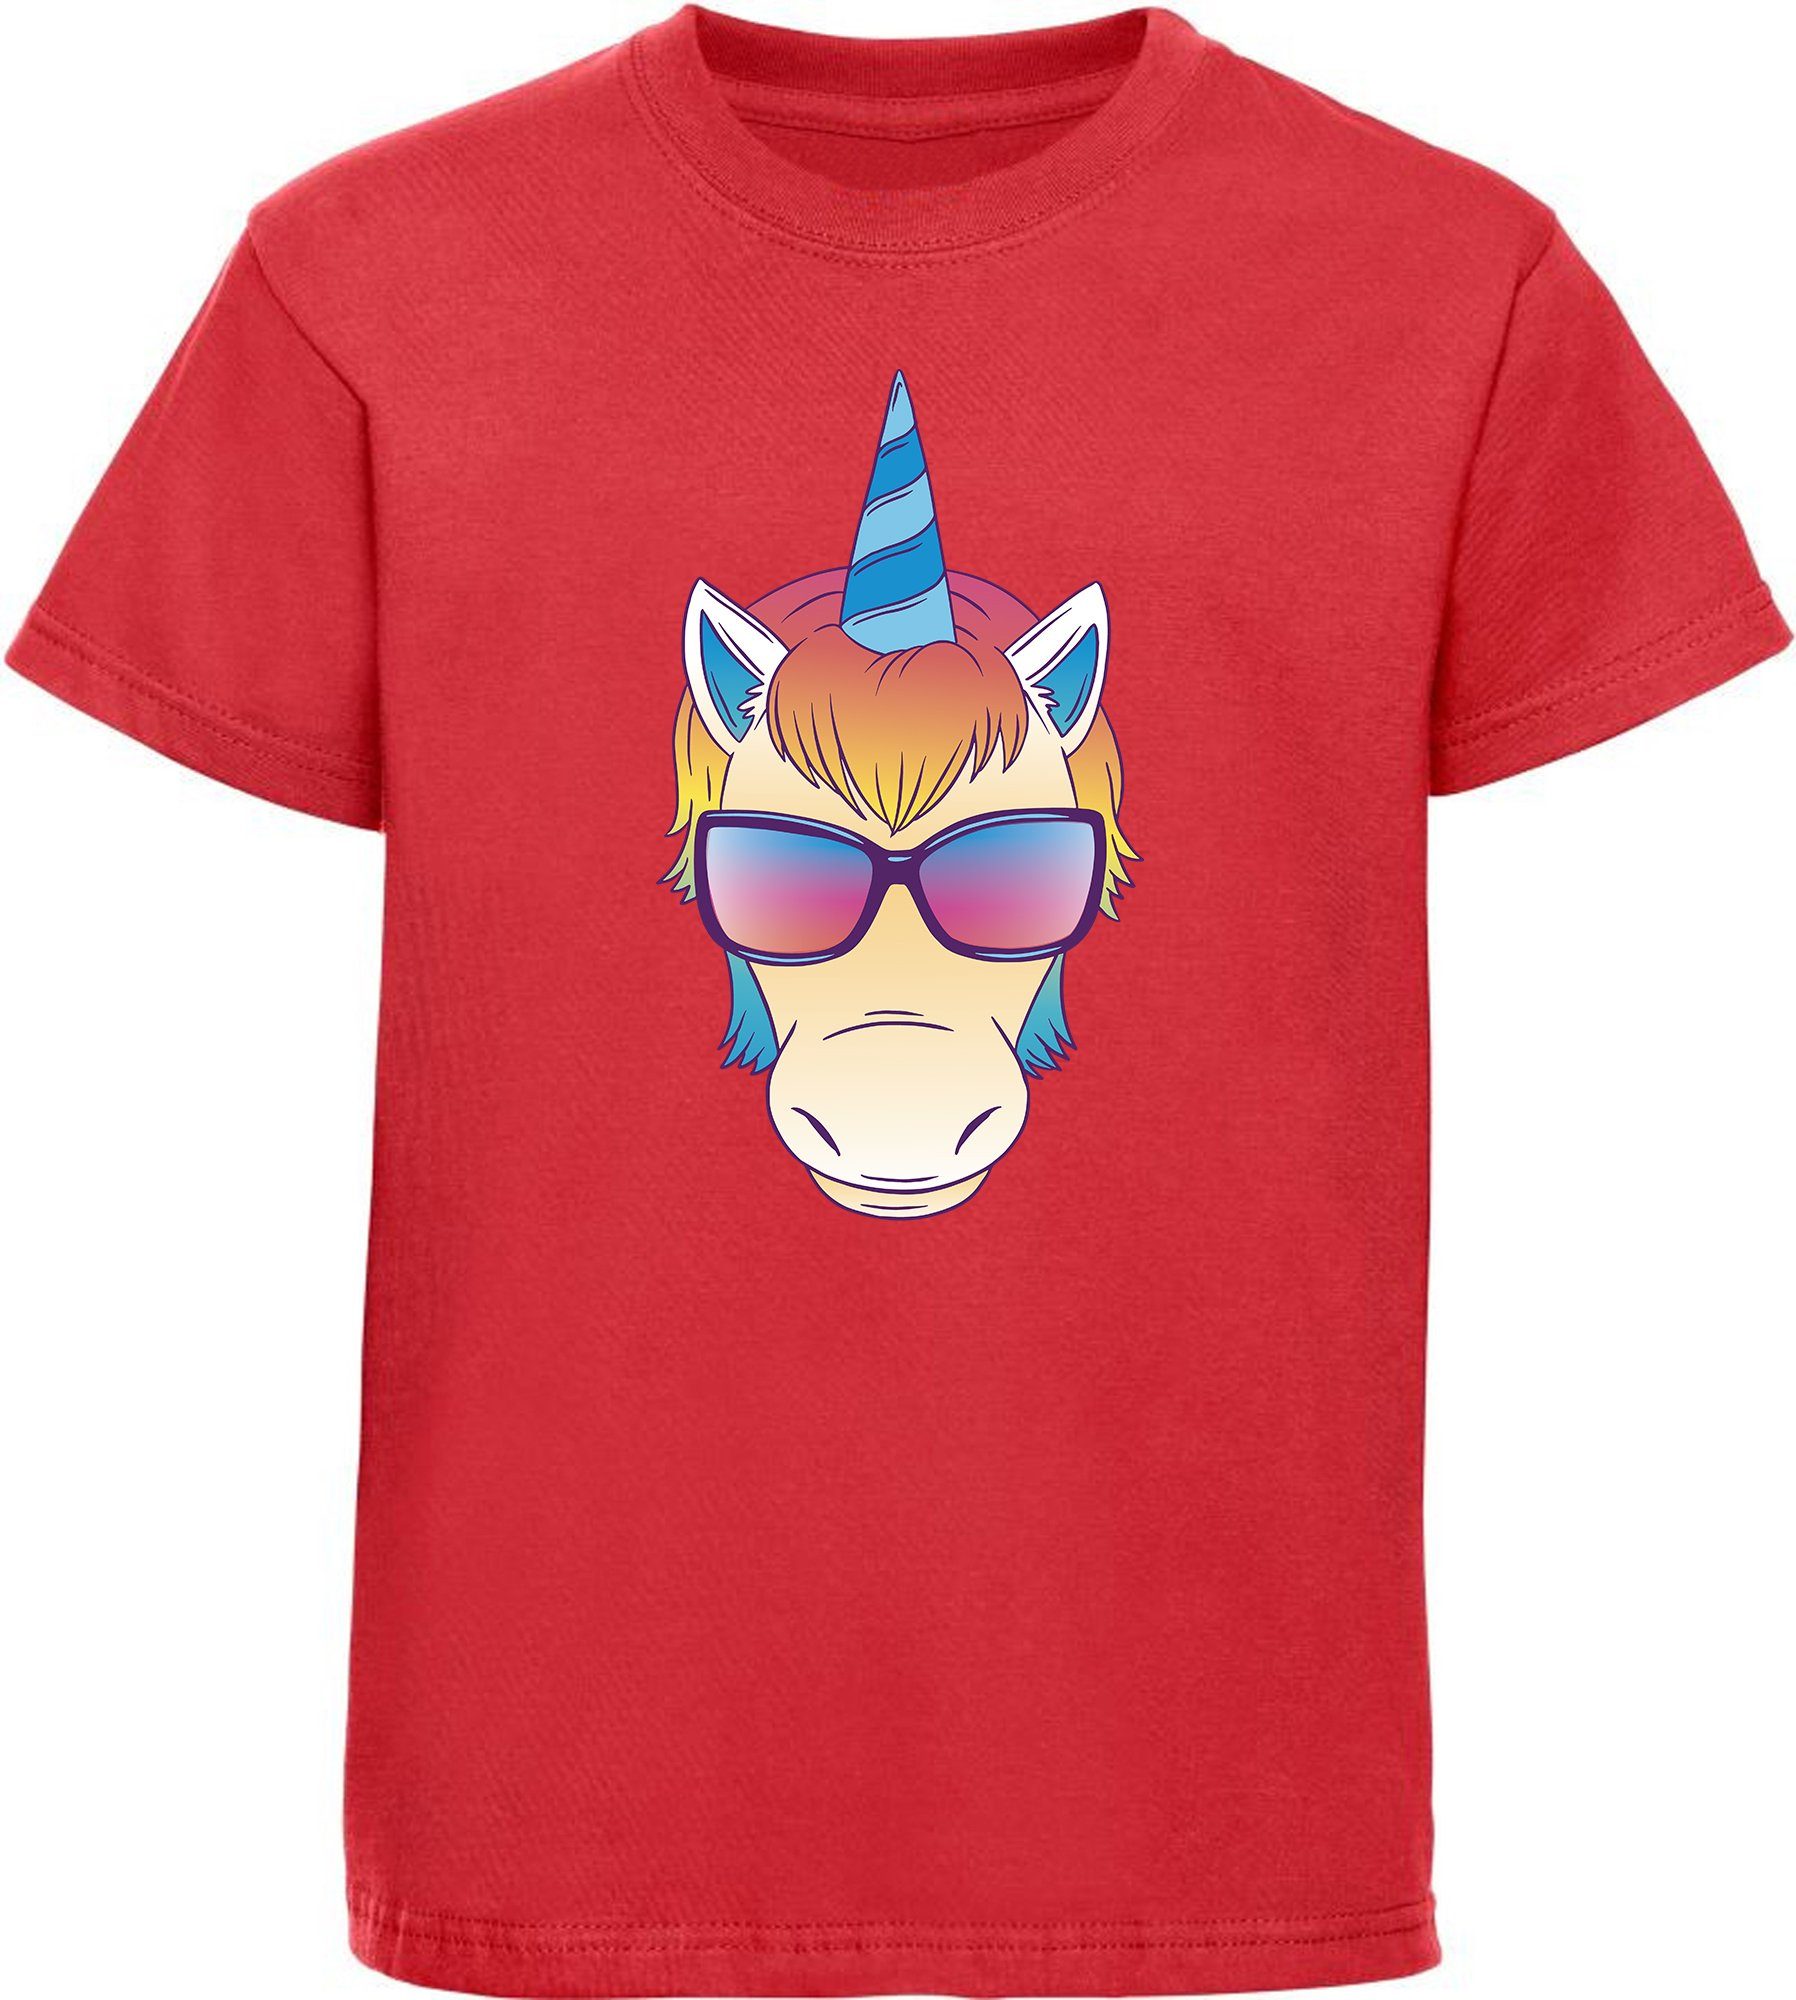 MyDesign24 T-Shirt Kinder Print Shirt bedruckt - Einhorn Kopf mit Sonnenbrille Baumwollshirt mit Aufdruck, i255 rot